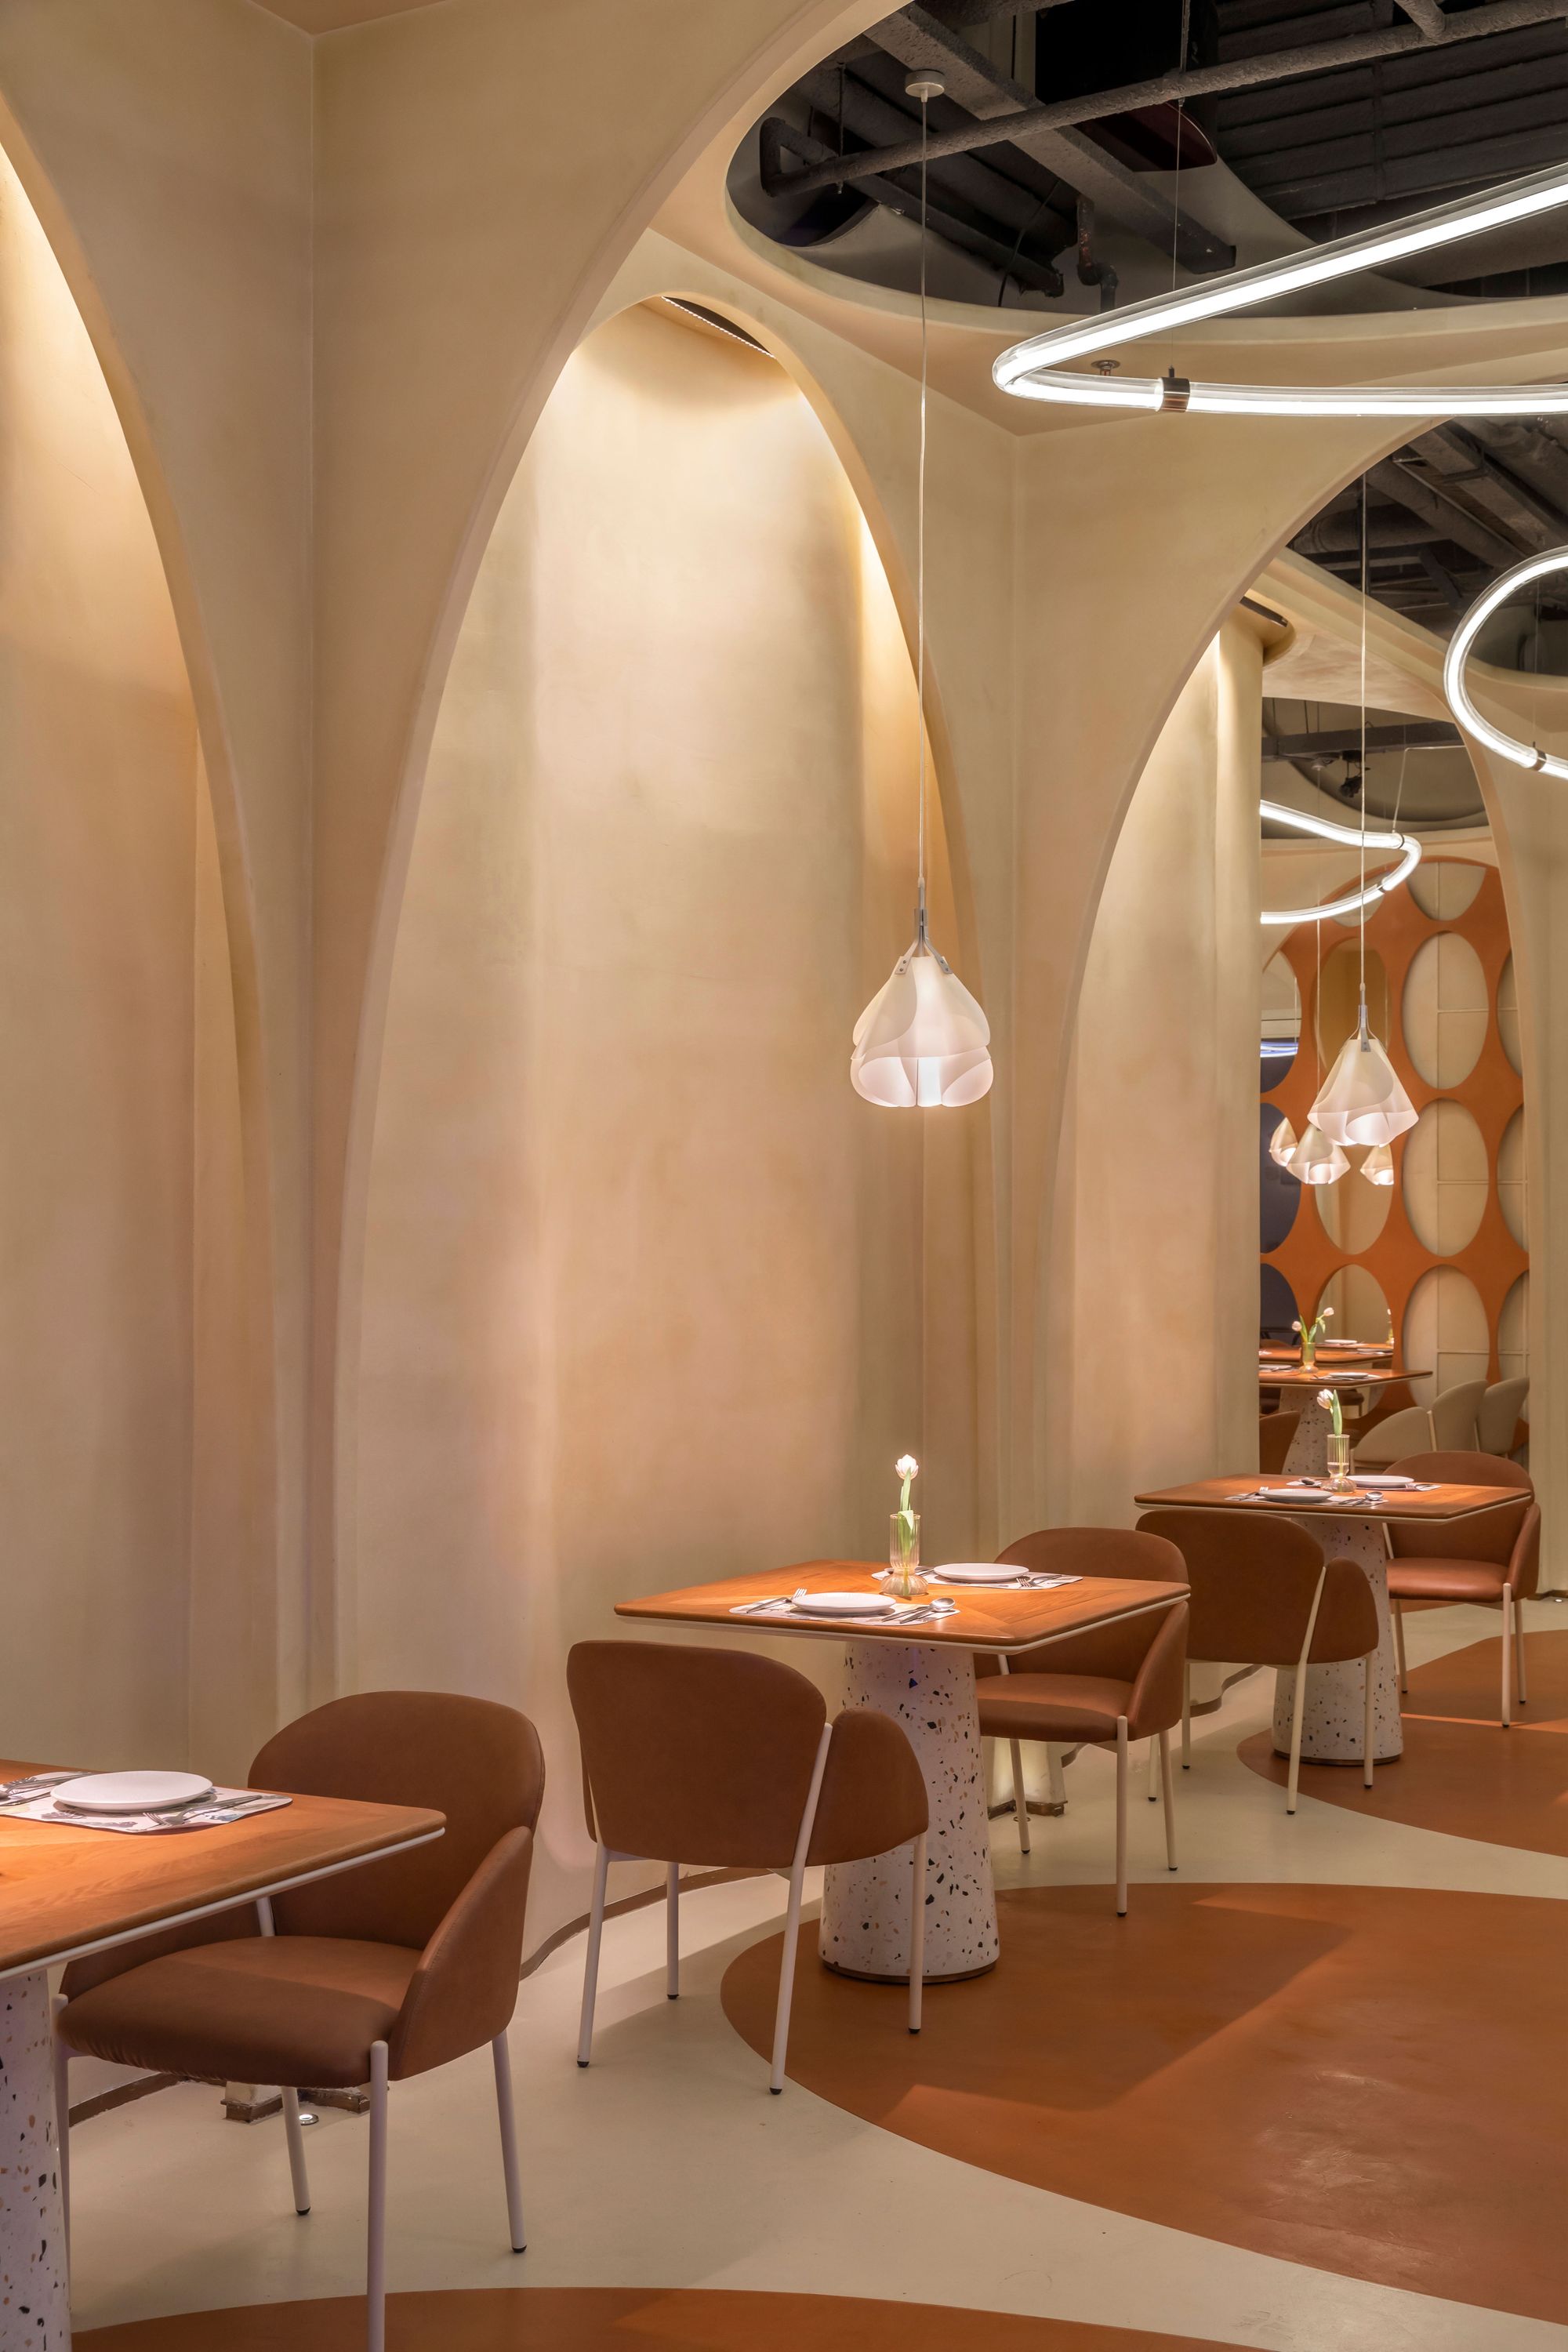 图片[5]|遇见11华阳餐厅|ART-Arrakis | 建筑室内设计的创新与灵感